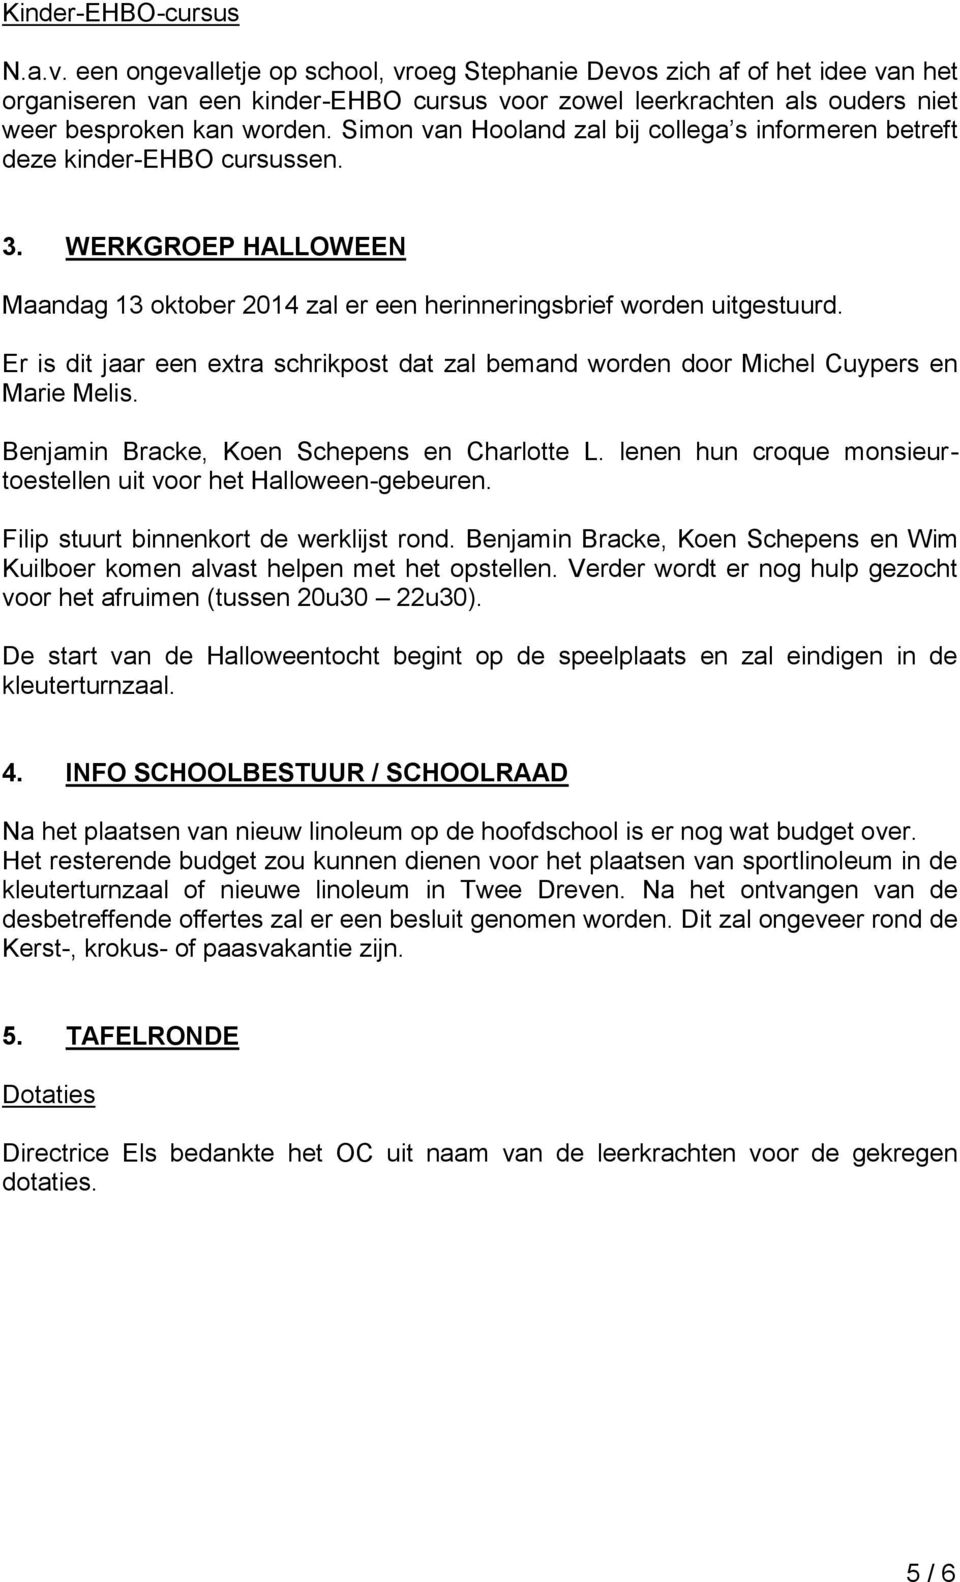 Simon van Hooland zal bij collega s informeren betreft deze kinder-ehbo cursussen. 3. WERKGROEP HALLOWEEN Maandag 13 oktober 2014 zal er een herinneringsbrief worden uitgestuurd.